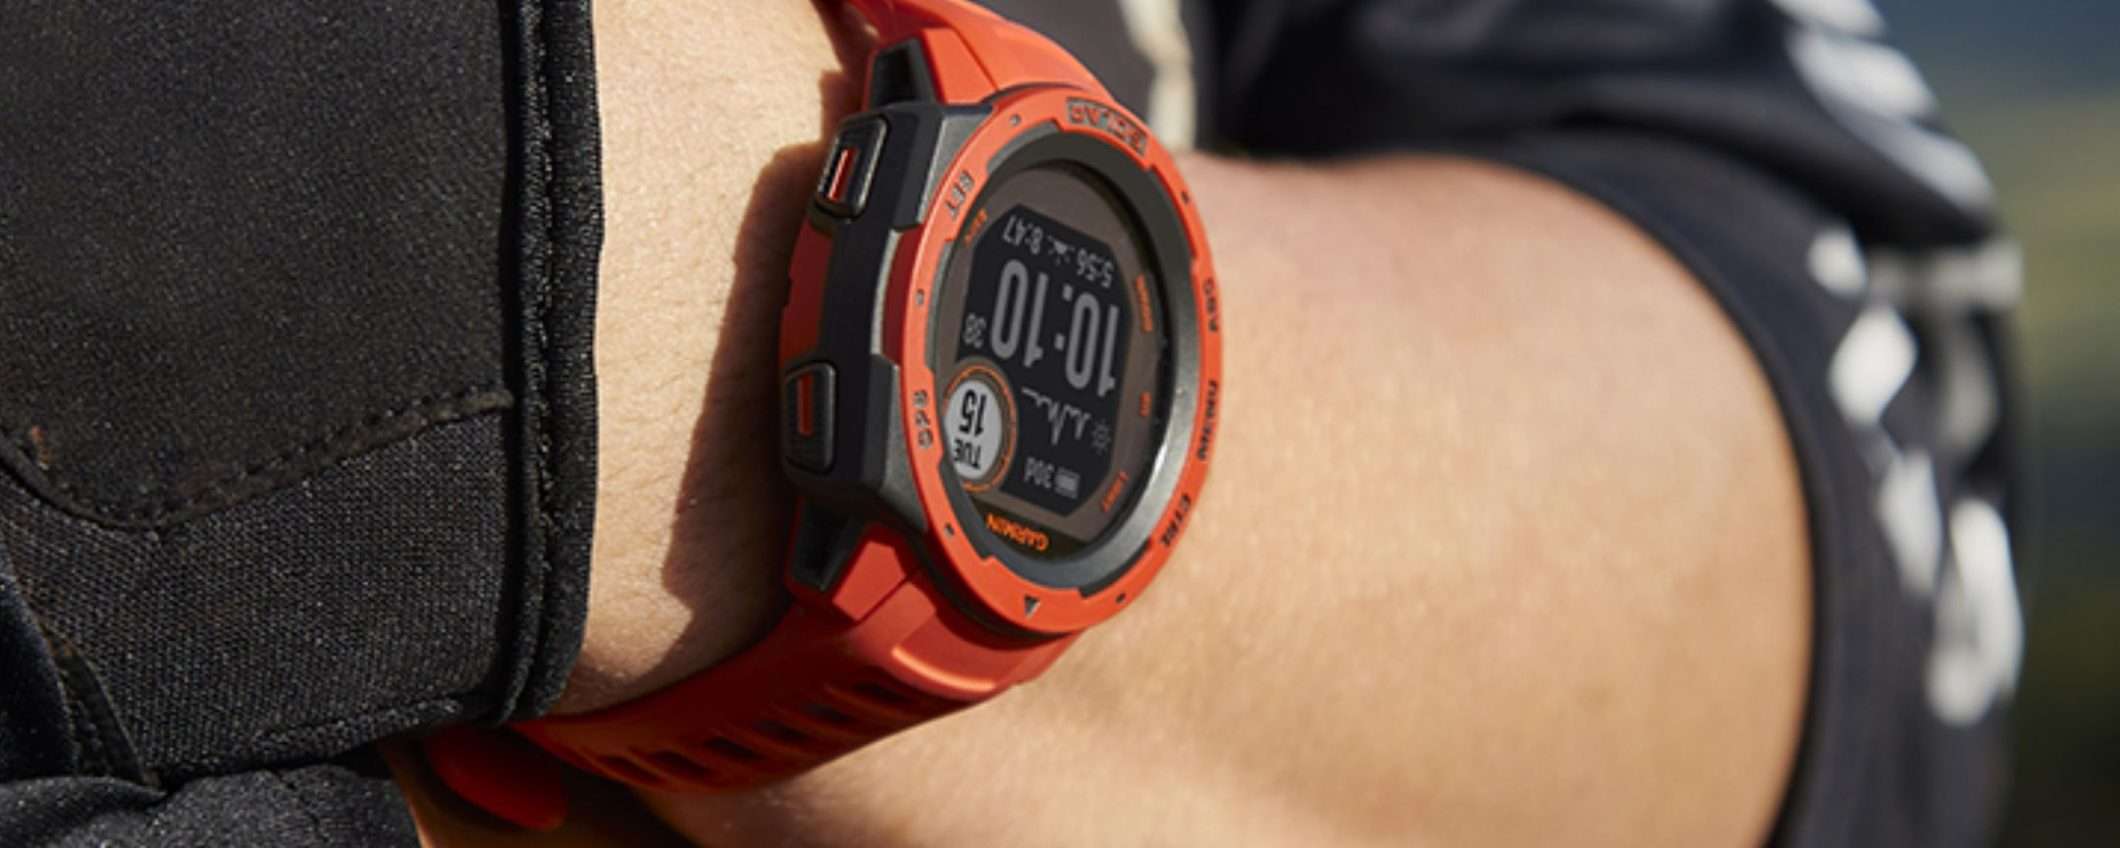 Instinct Solar, il SUPERLATIVO smartwatch di Garmin CROLLA su Amazon